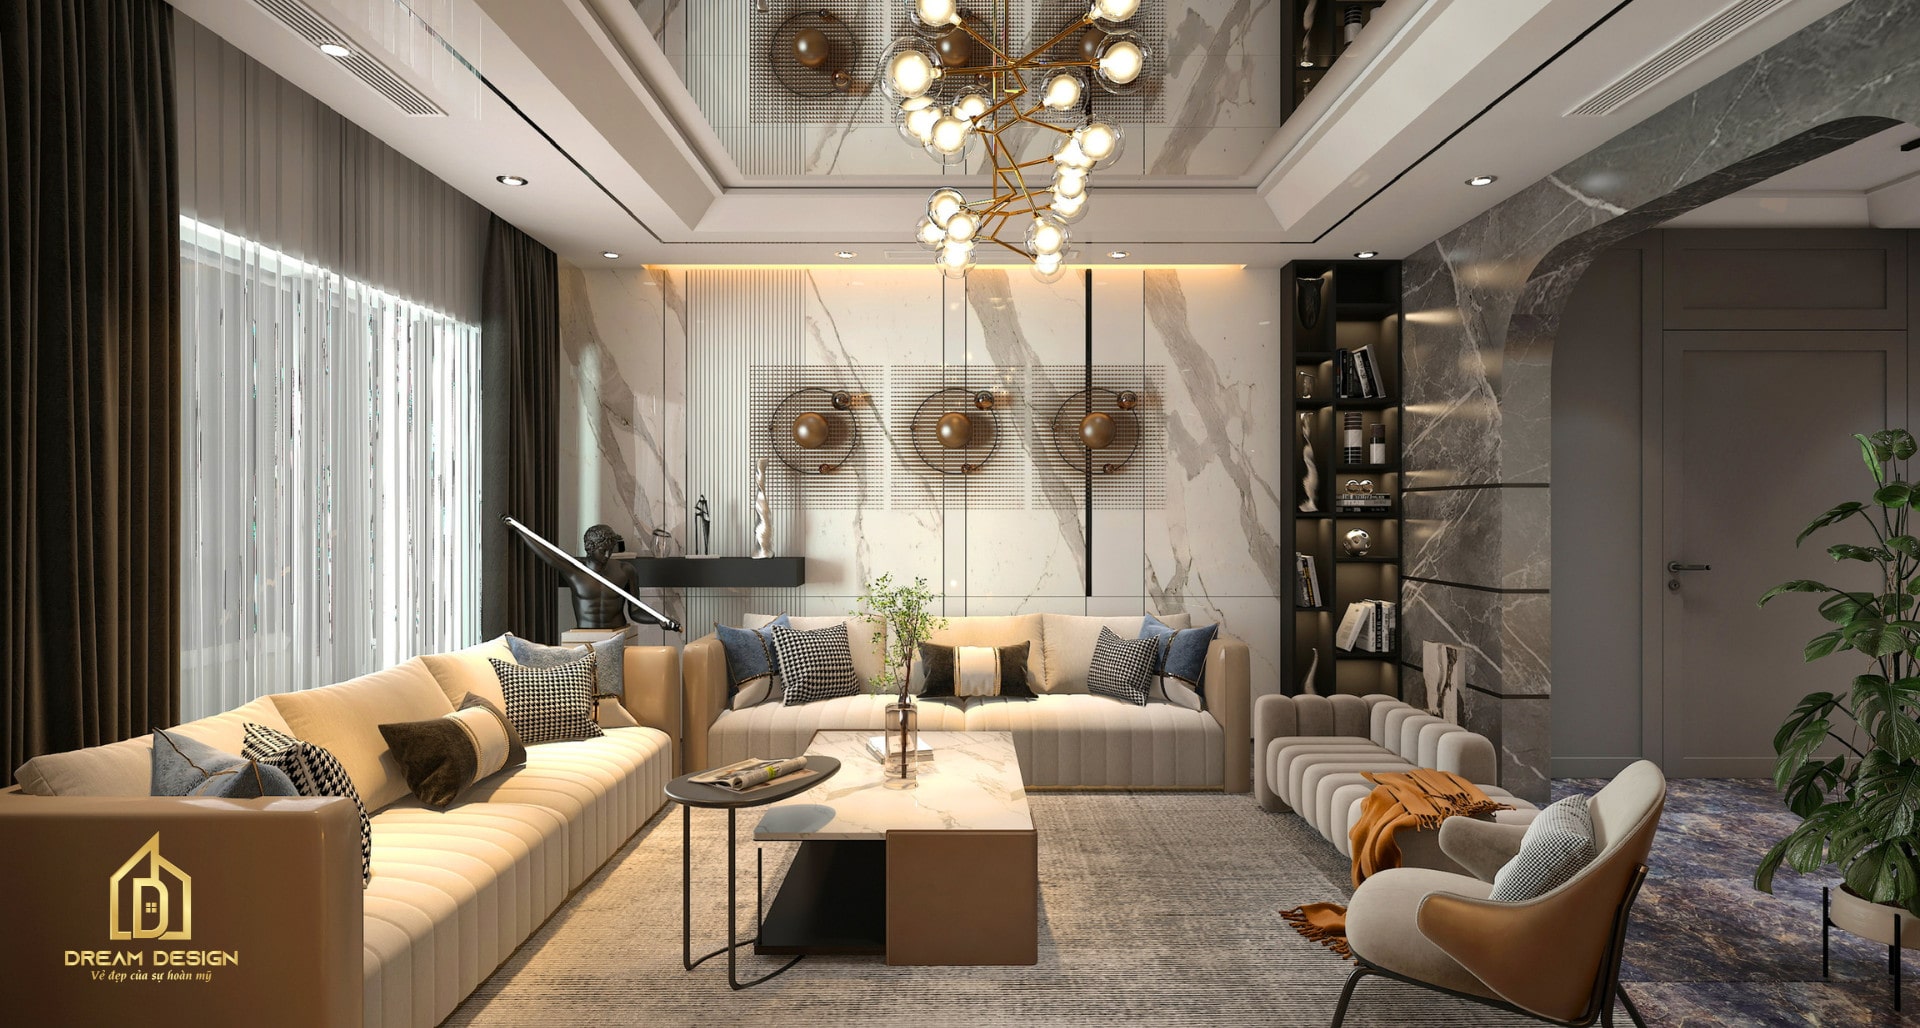 Không gian phòng khách kết hợp với các món đồ decor tạo nên một không gian vô cùng sang trọng và bắt mắt